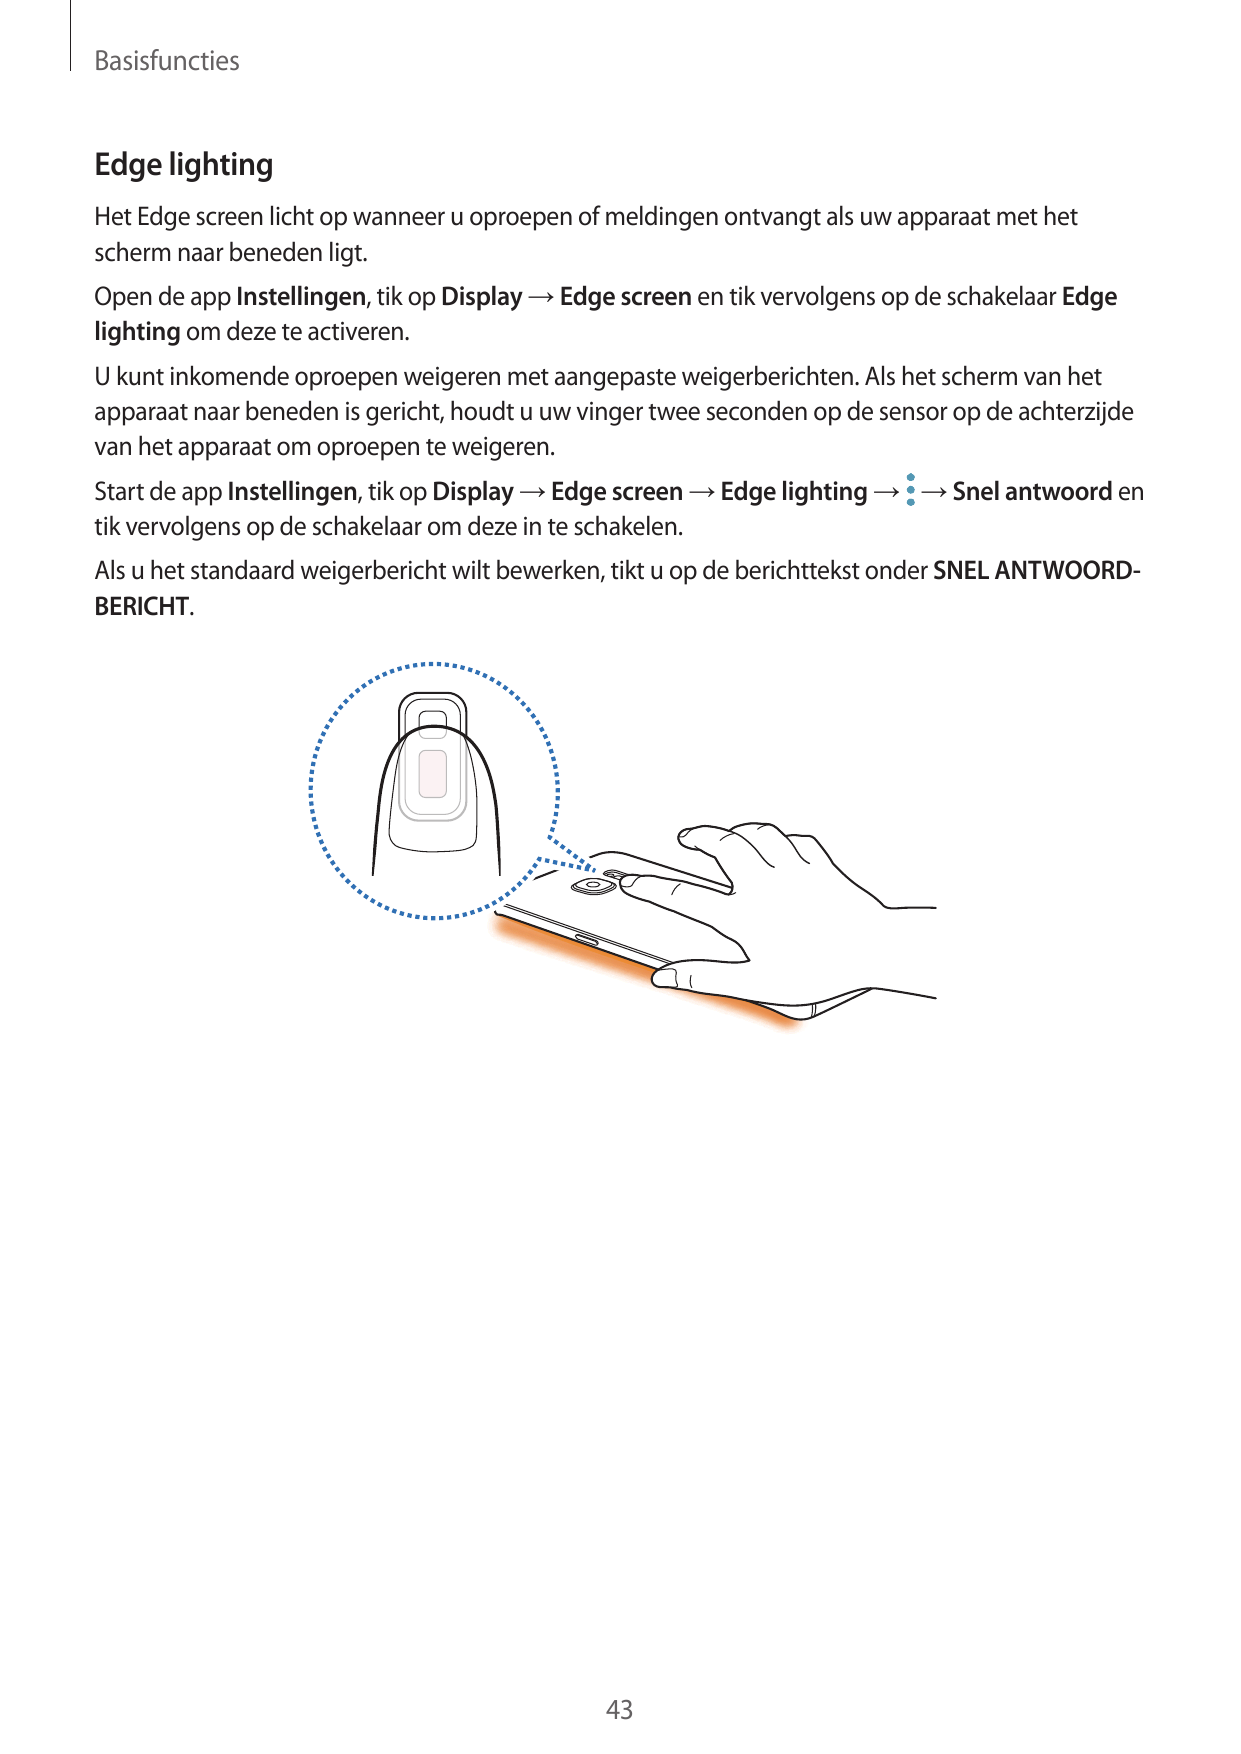 BasisfunctiesEdge lightingHet Edge screen licht op wanneer u oproepen of meldingen ontvangt als uw apparaat met hetscherm naar b